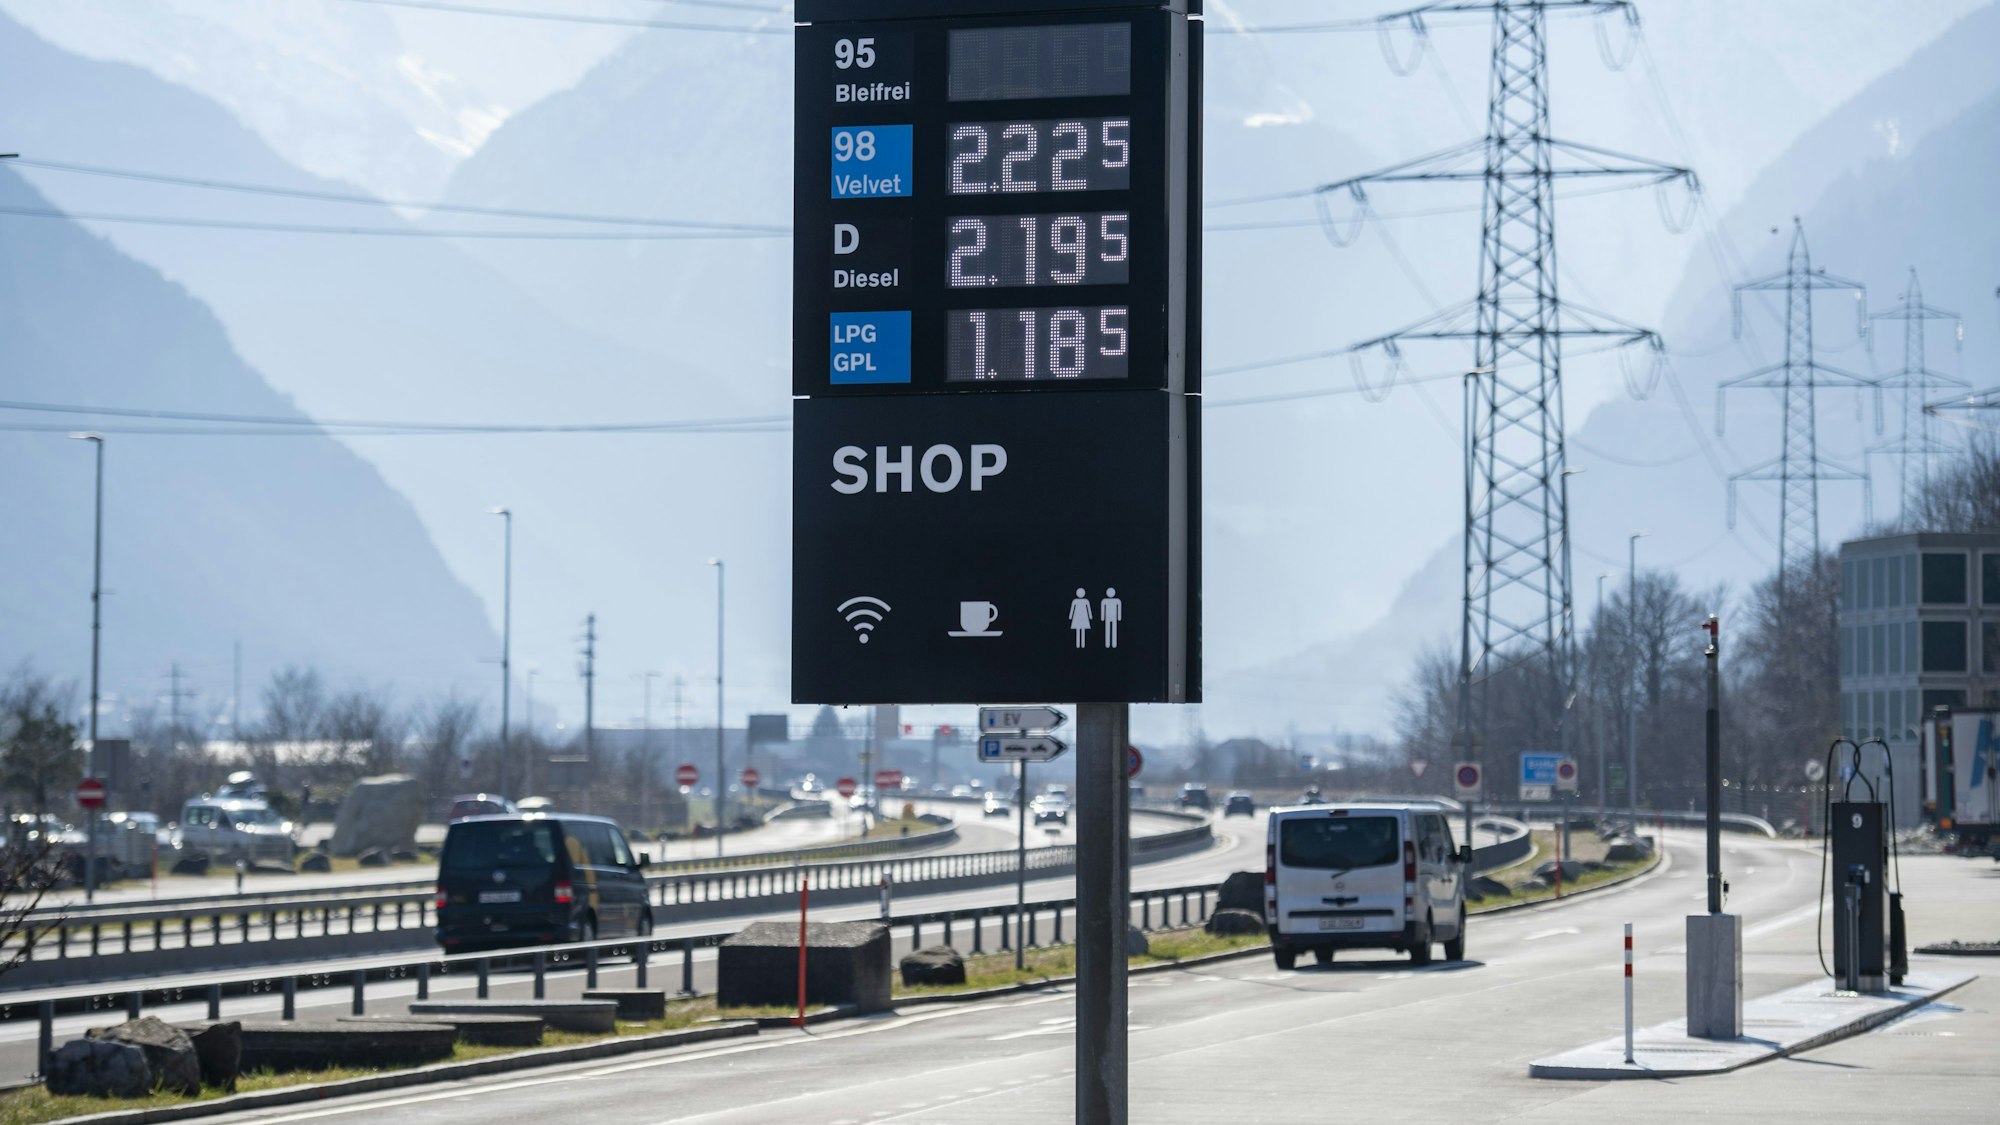 Eine Tankstelle an einer Autobahn. Im Vordergrund steht eine Preistafel für Kraftstoff, im Hintergrund fahren Autos.